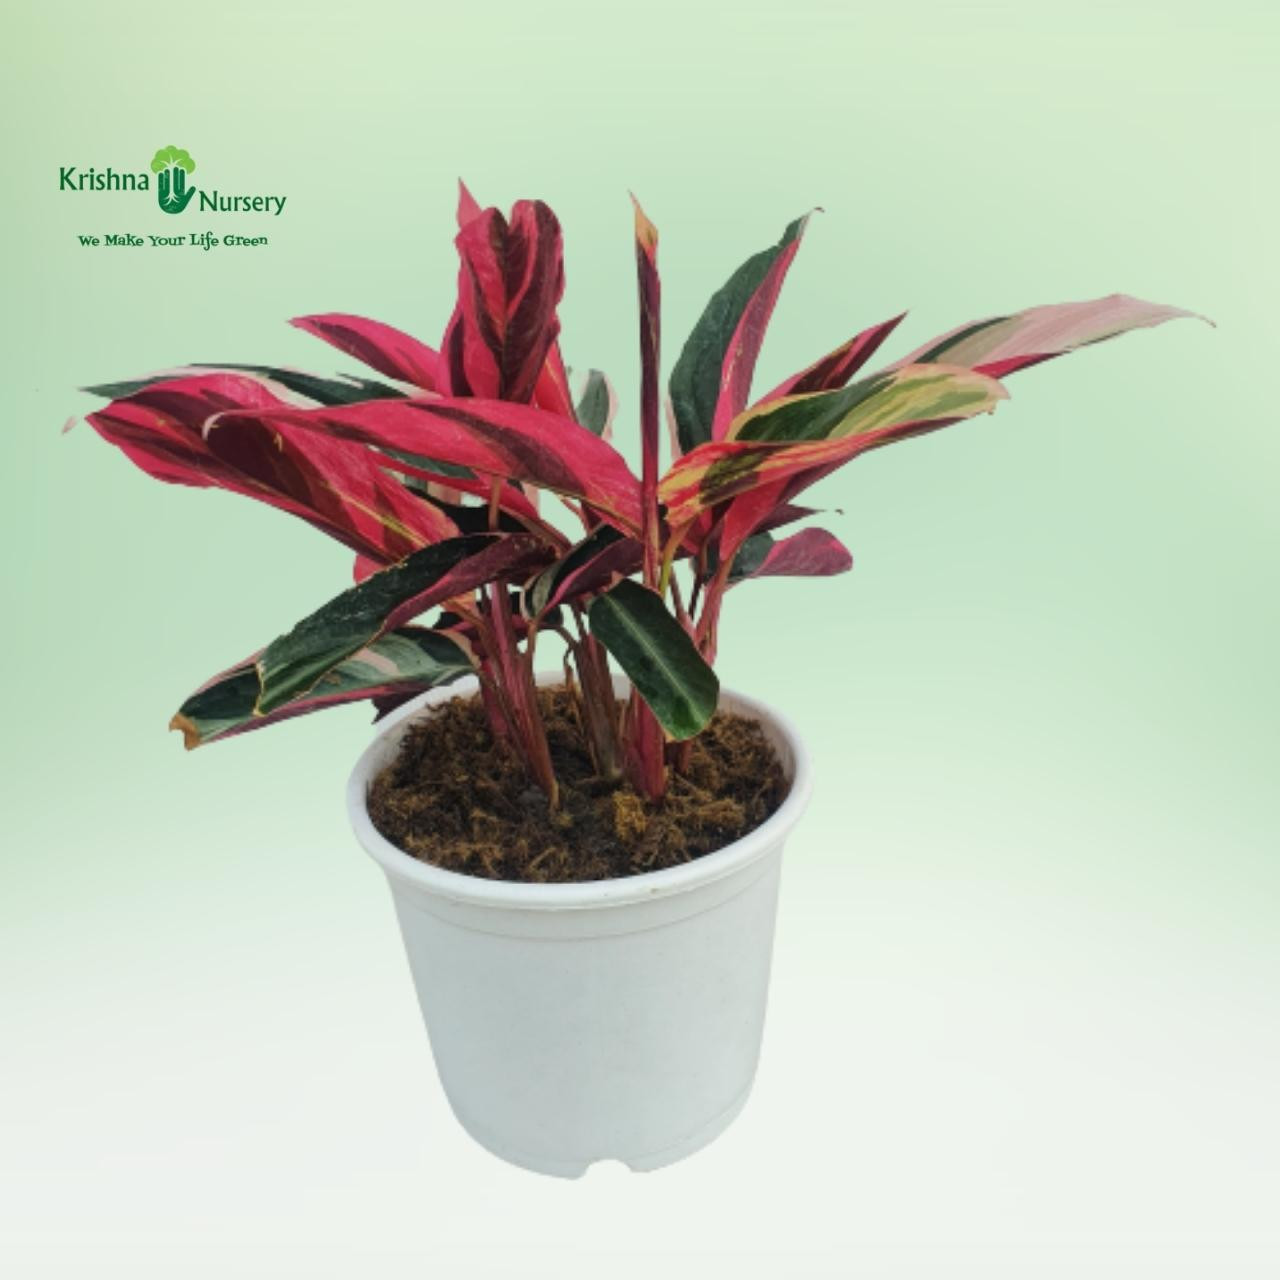 Stromanthe Triostar Plant - Indoor Plants -  - stromanthe-triostar-plant -   